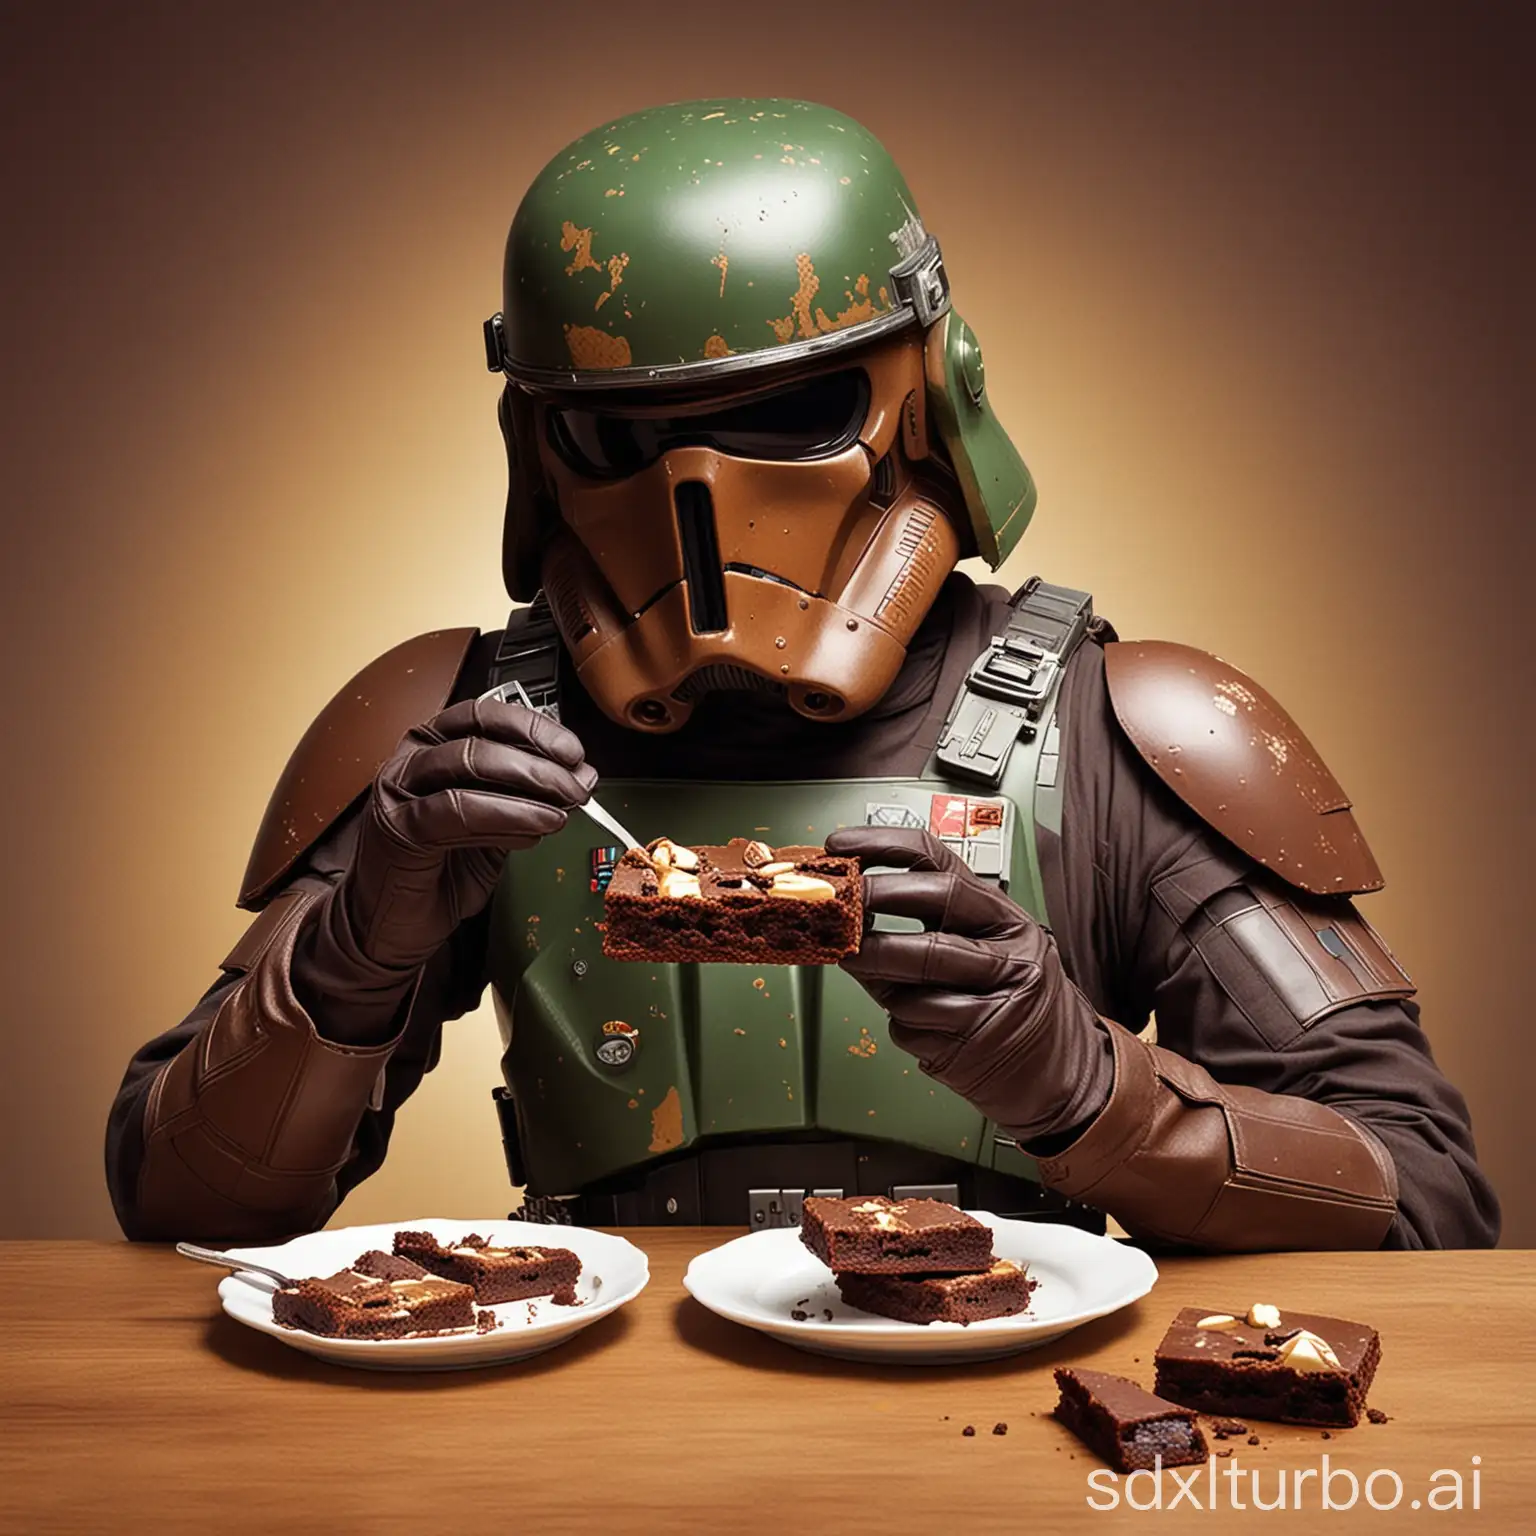 Star Wars soldier eating brownies